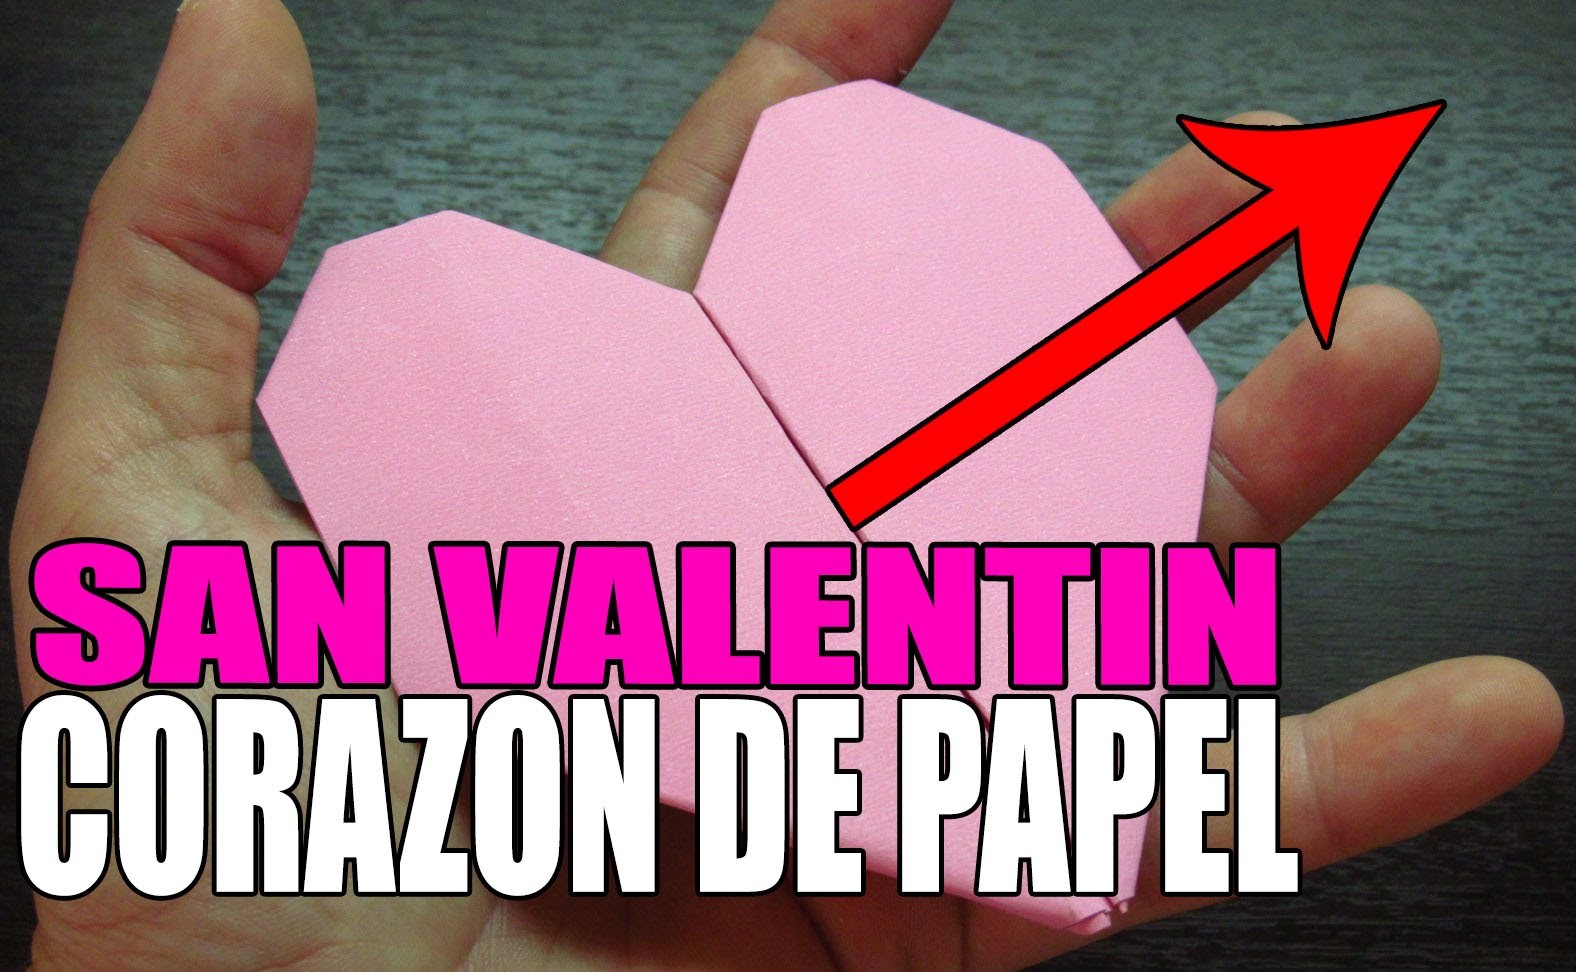 Como hacer un CORAZON DE PAPEL paso a paso en español para SAN VALENTIN (Muy fácil) origami heart